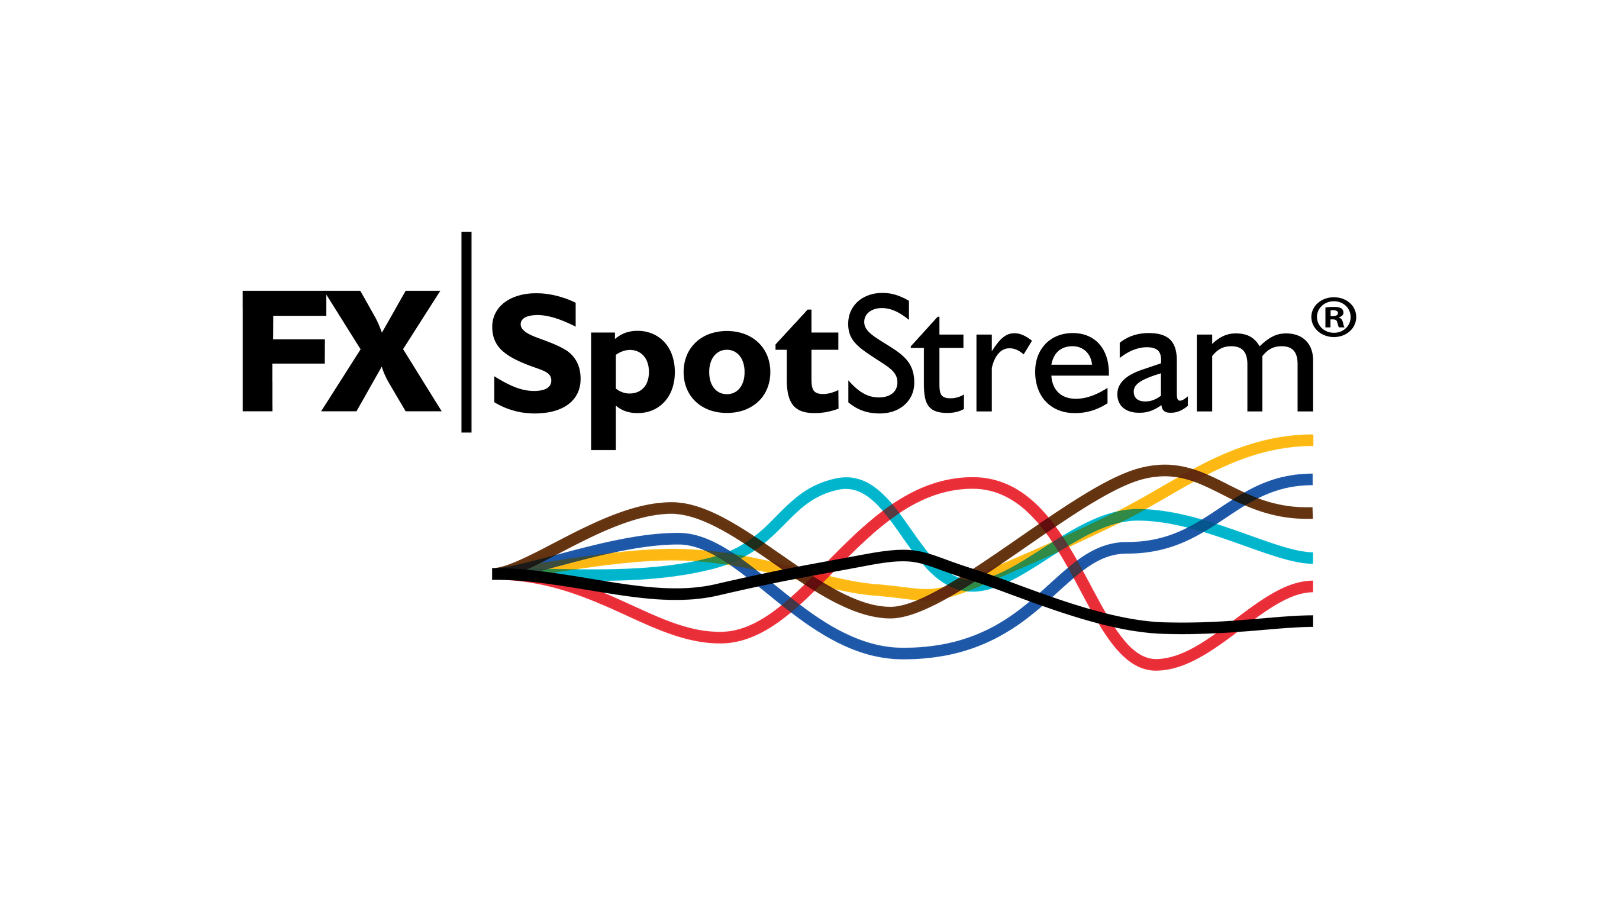 ارتفاع أحجام تداول شركة FXSpotStream إلى 1.28$ تريليون في مايو